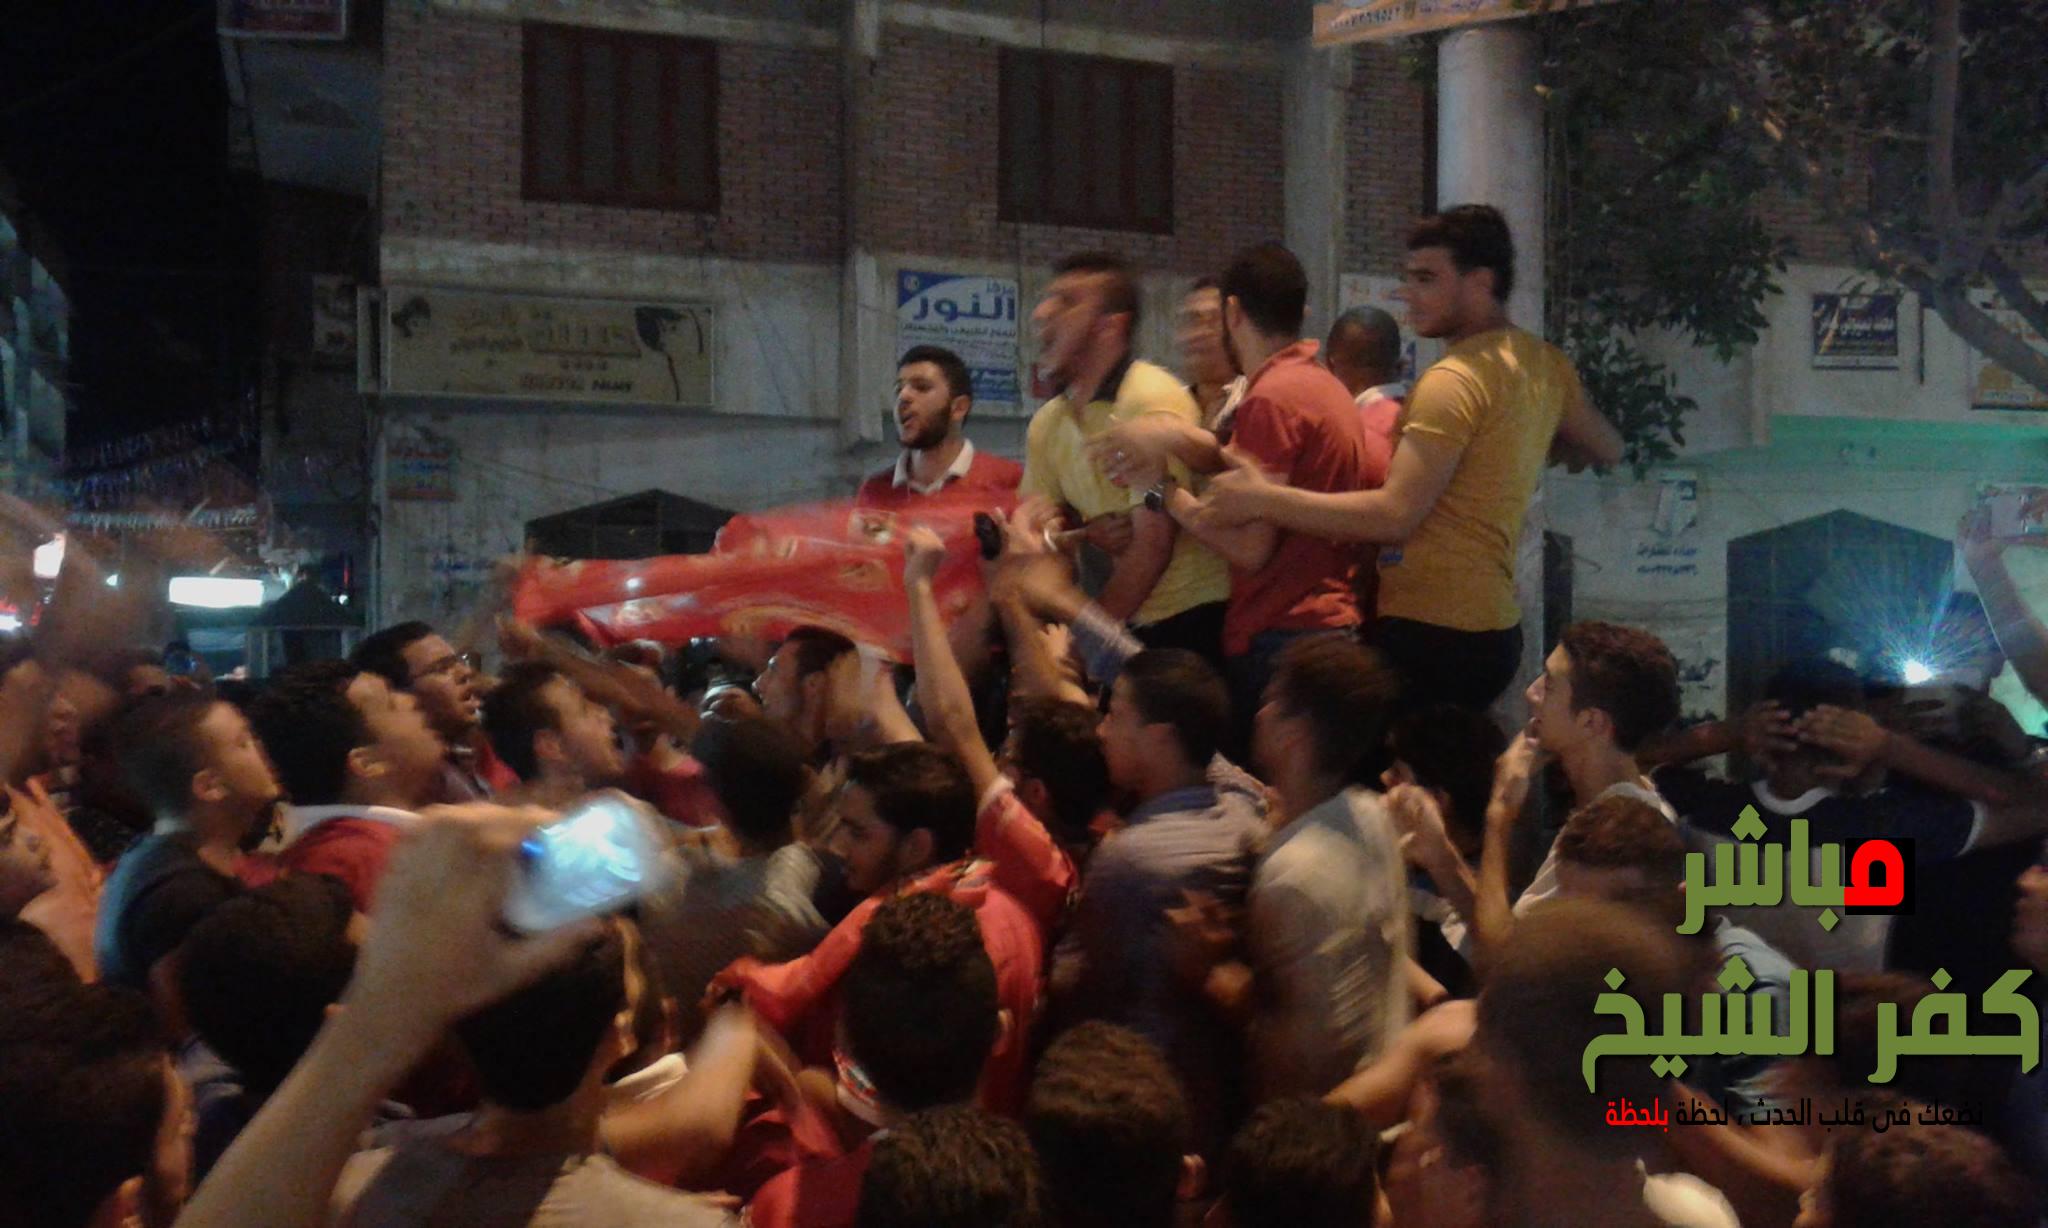  بالصور المئات من مشجعي الأهلي يحتفلون بفوزه بكفرالشيخ 